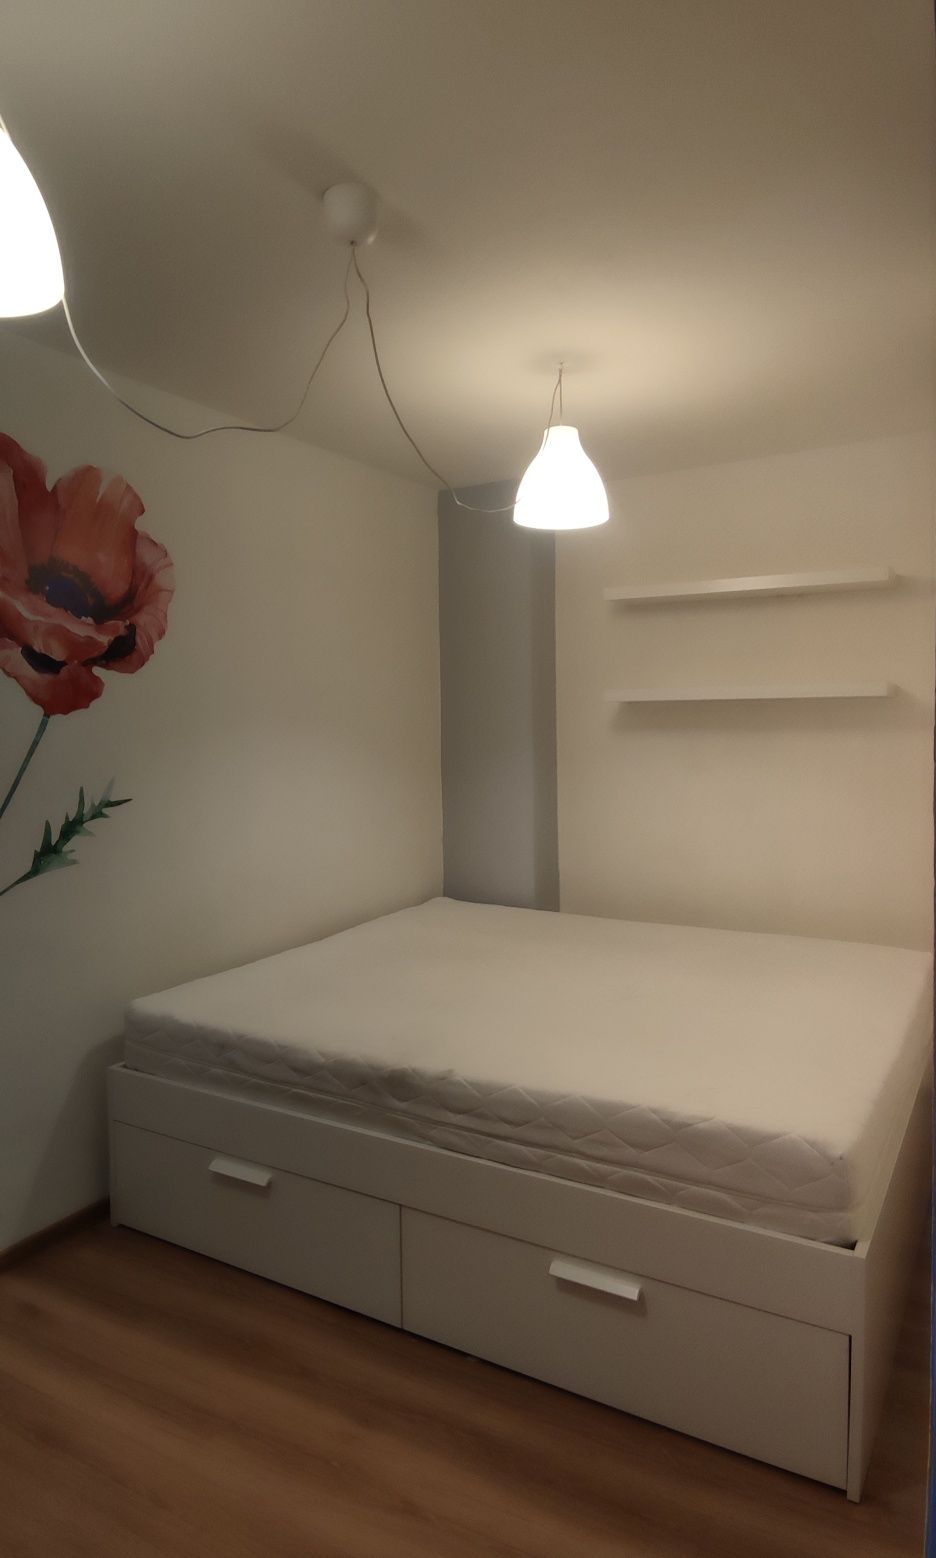 Okazja IKEA BRIMNES Rama łóżka z szufladami 180x200 cm
Rama łóżka z sz